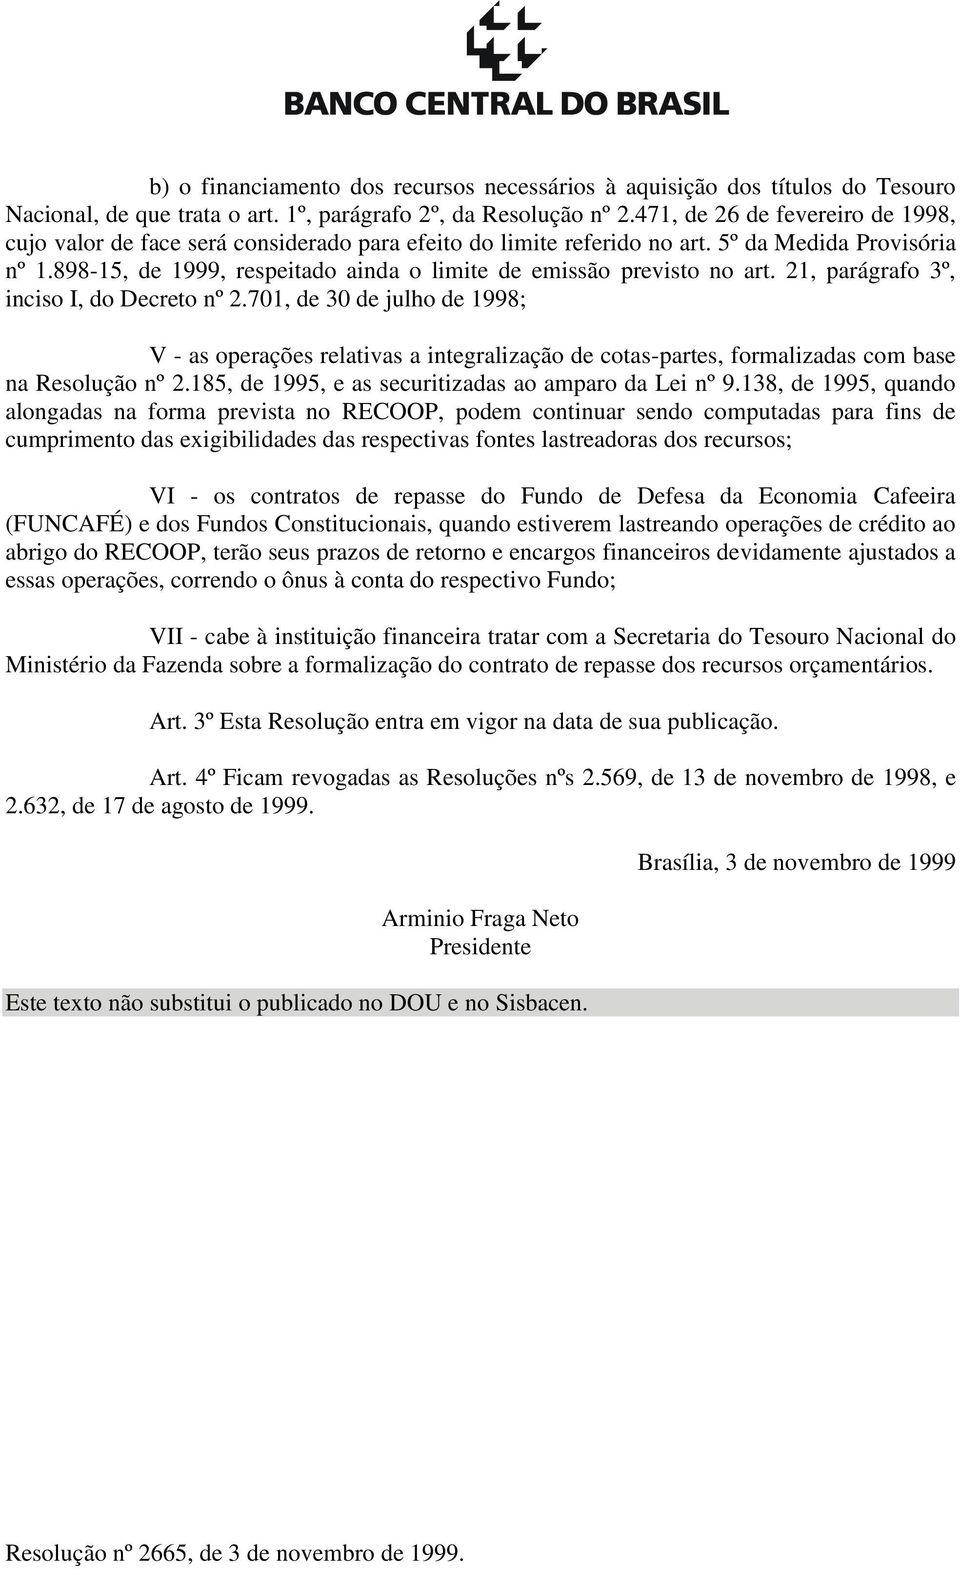 898-15, de 1999, respeitado ainda o limite de emissão previsto no art. 21, parágrafo 3º, inciso I, do Decreto nº 2.